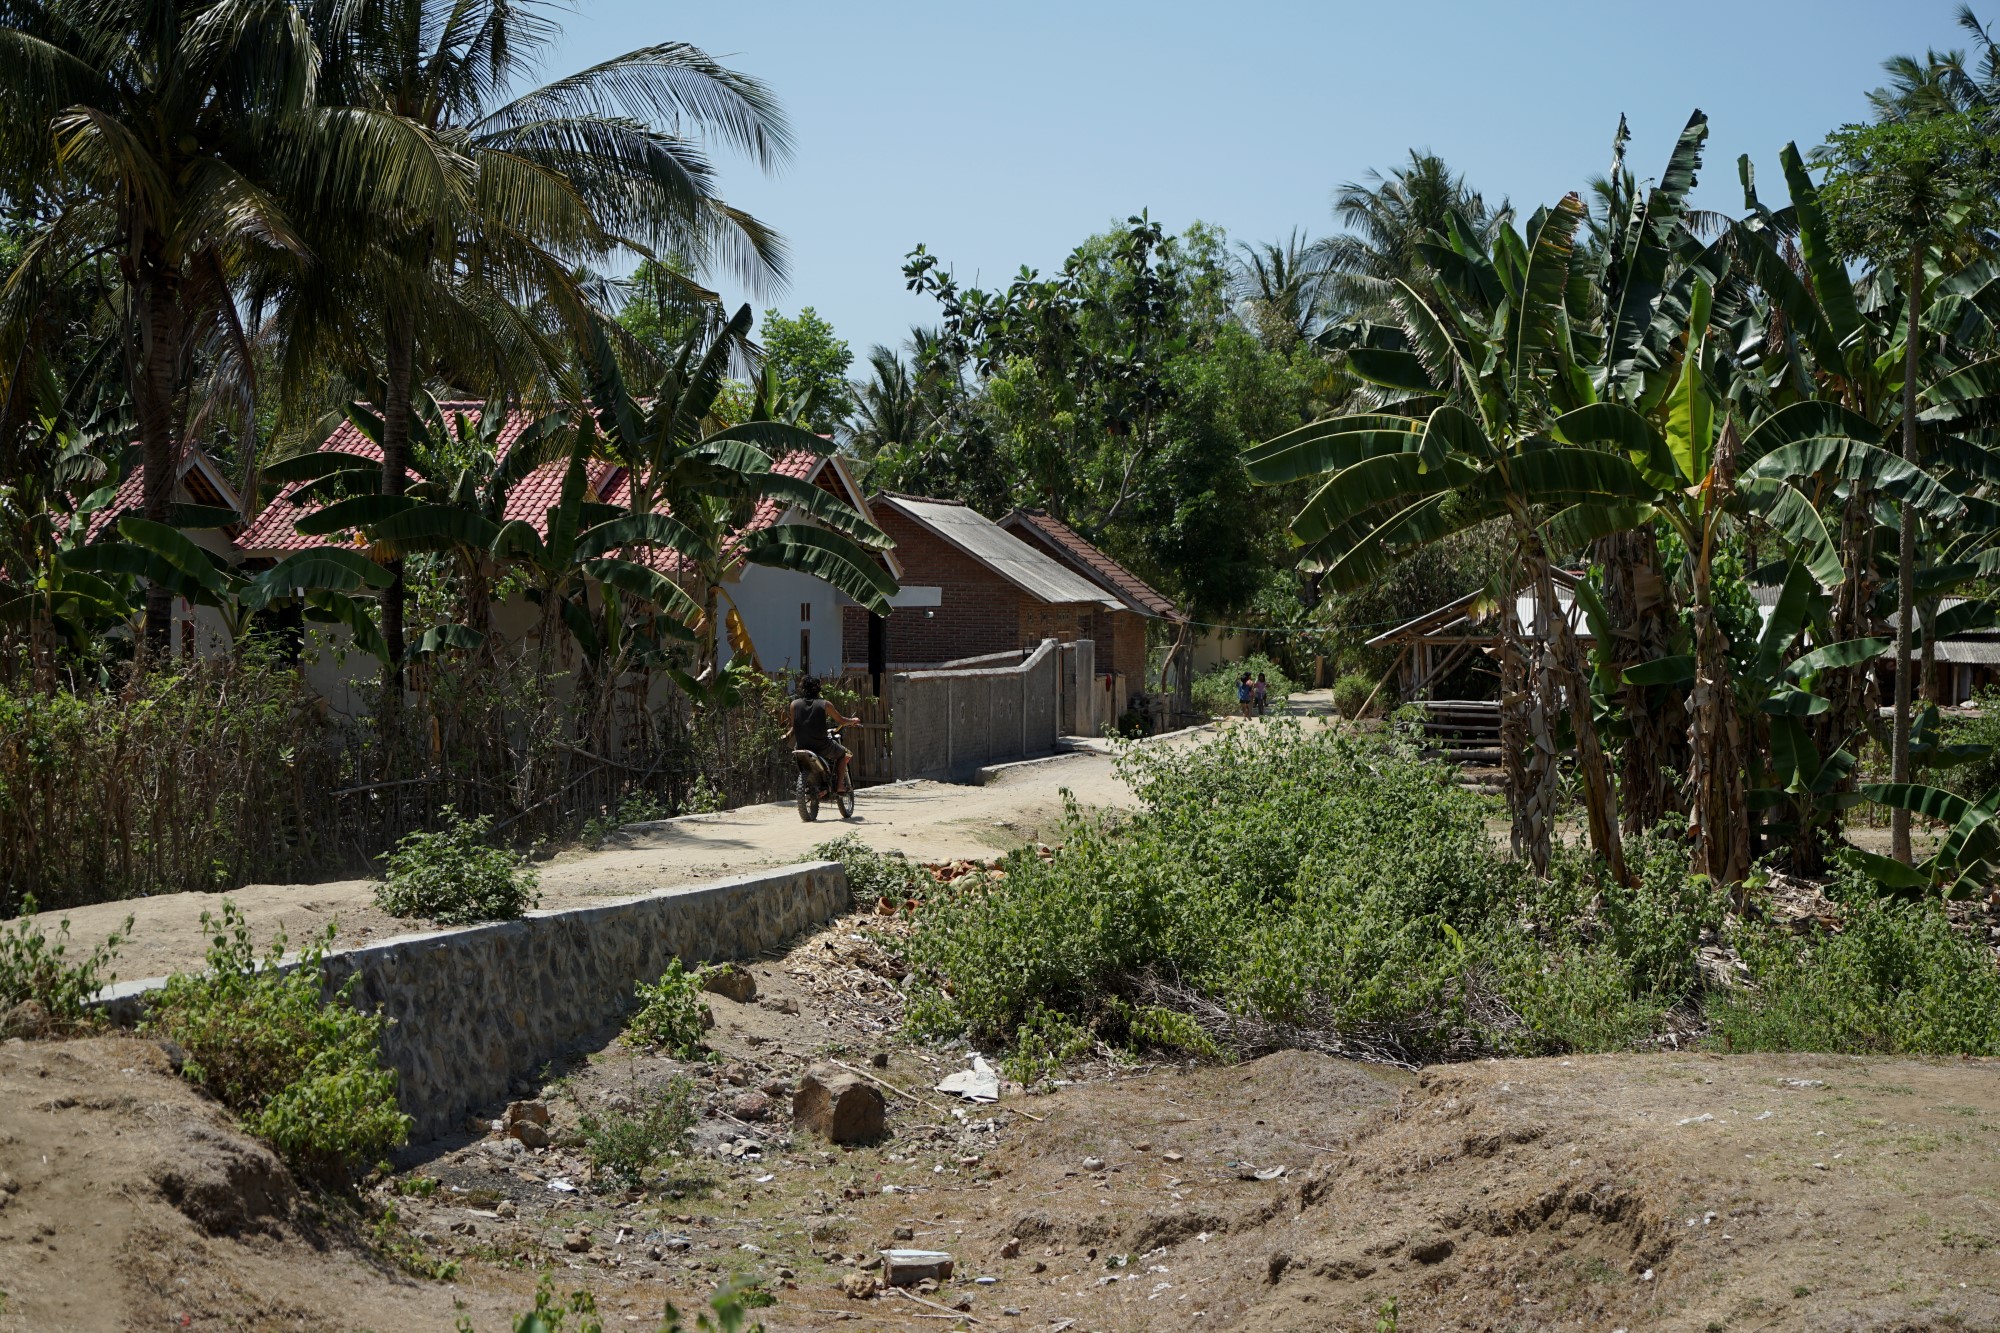 et område med palmer og hus